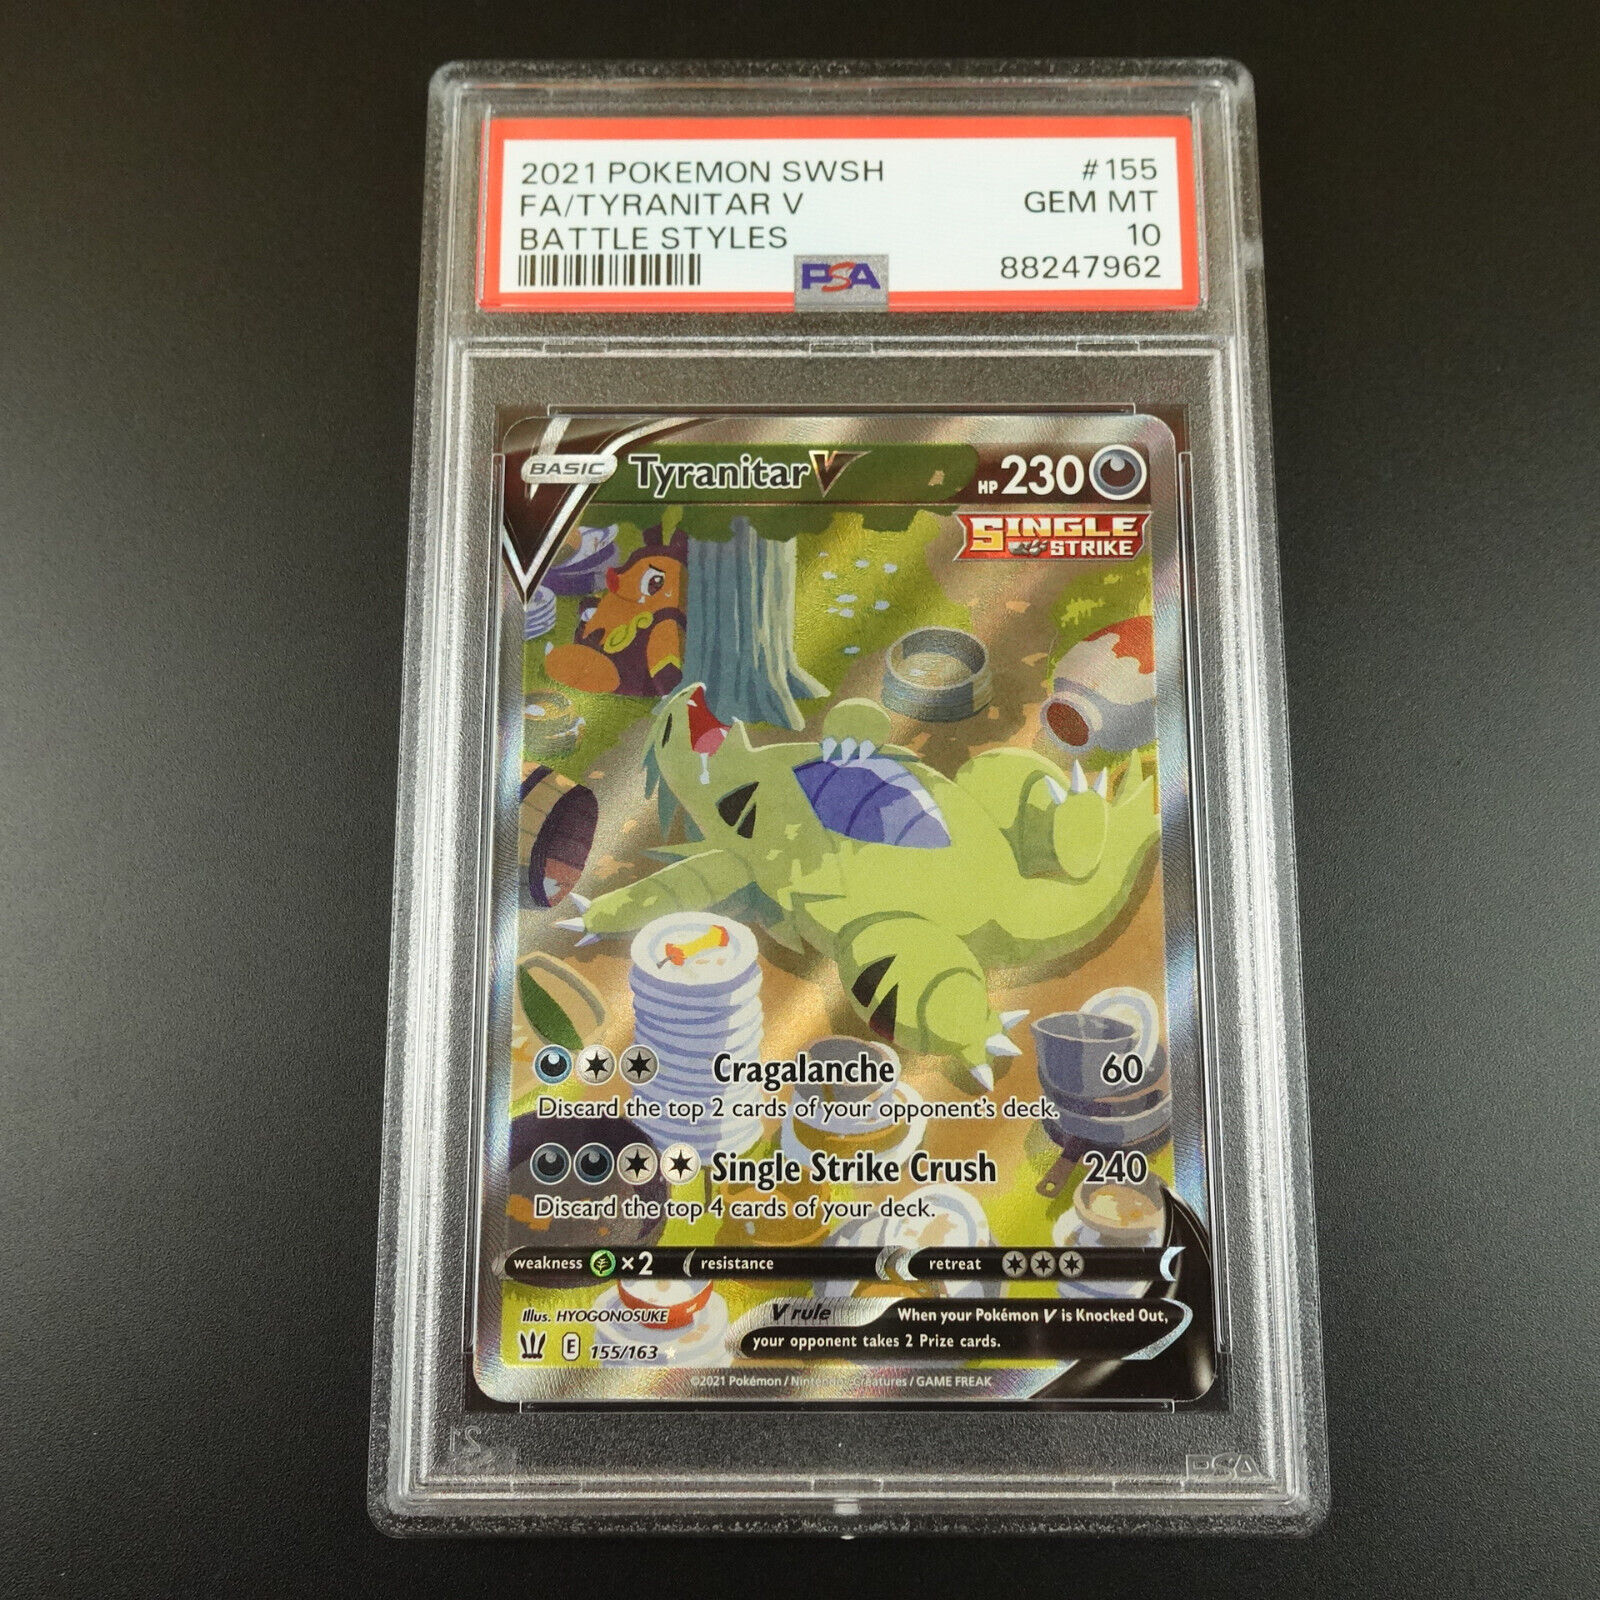 PSA 10 Tyranitar V 155/163 Battle Styles Holo Full Art Graded Pokemon Card